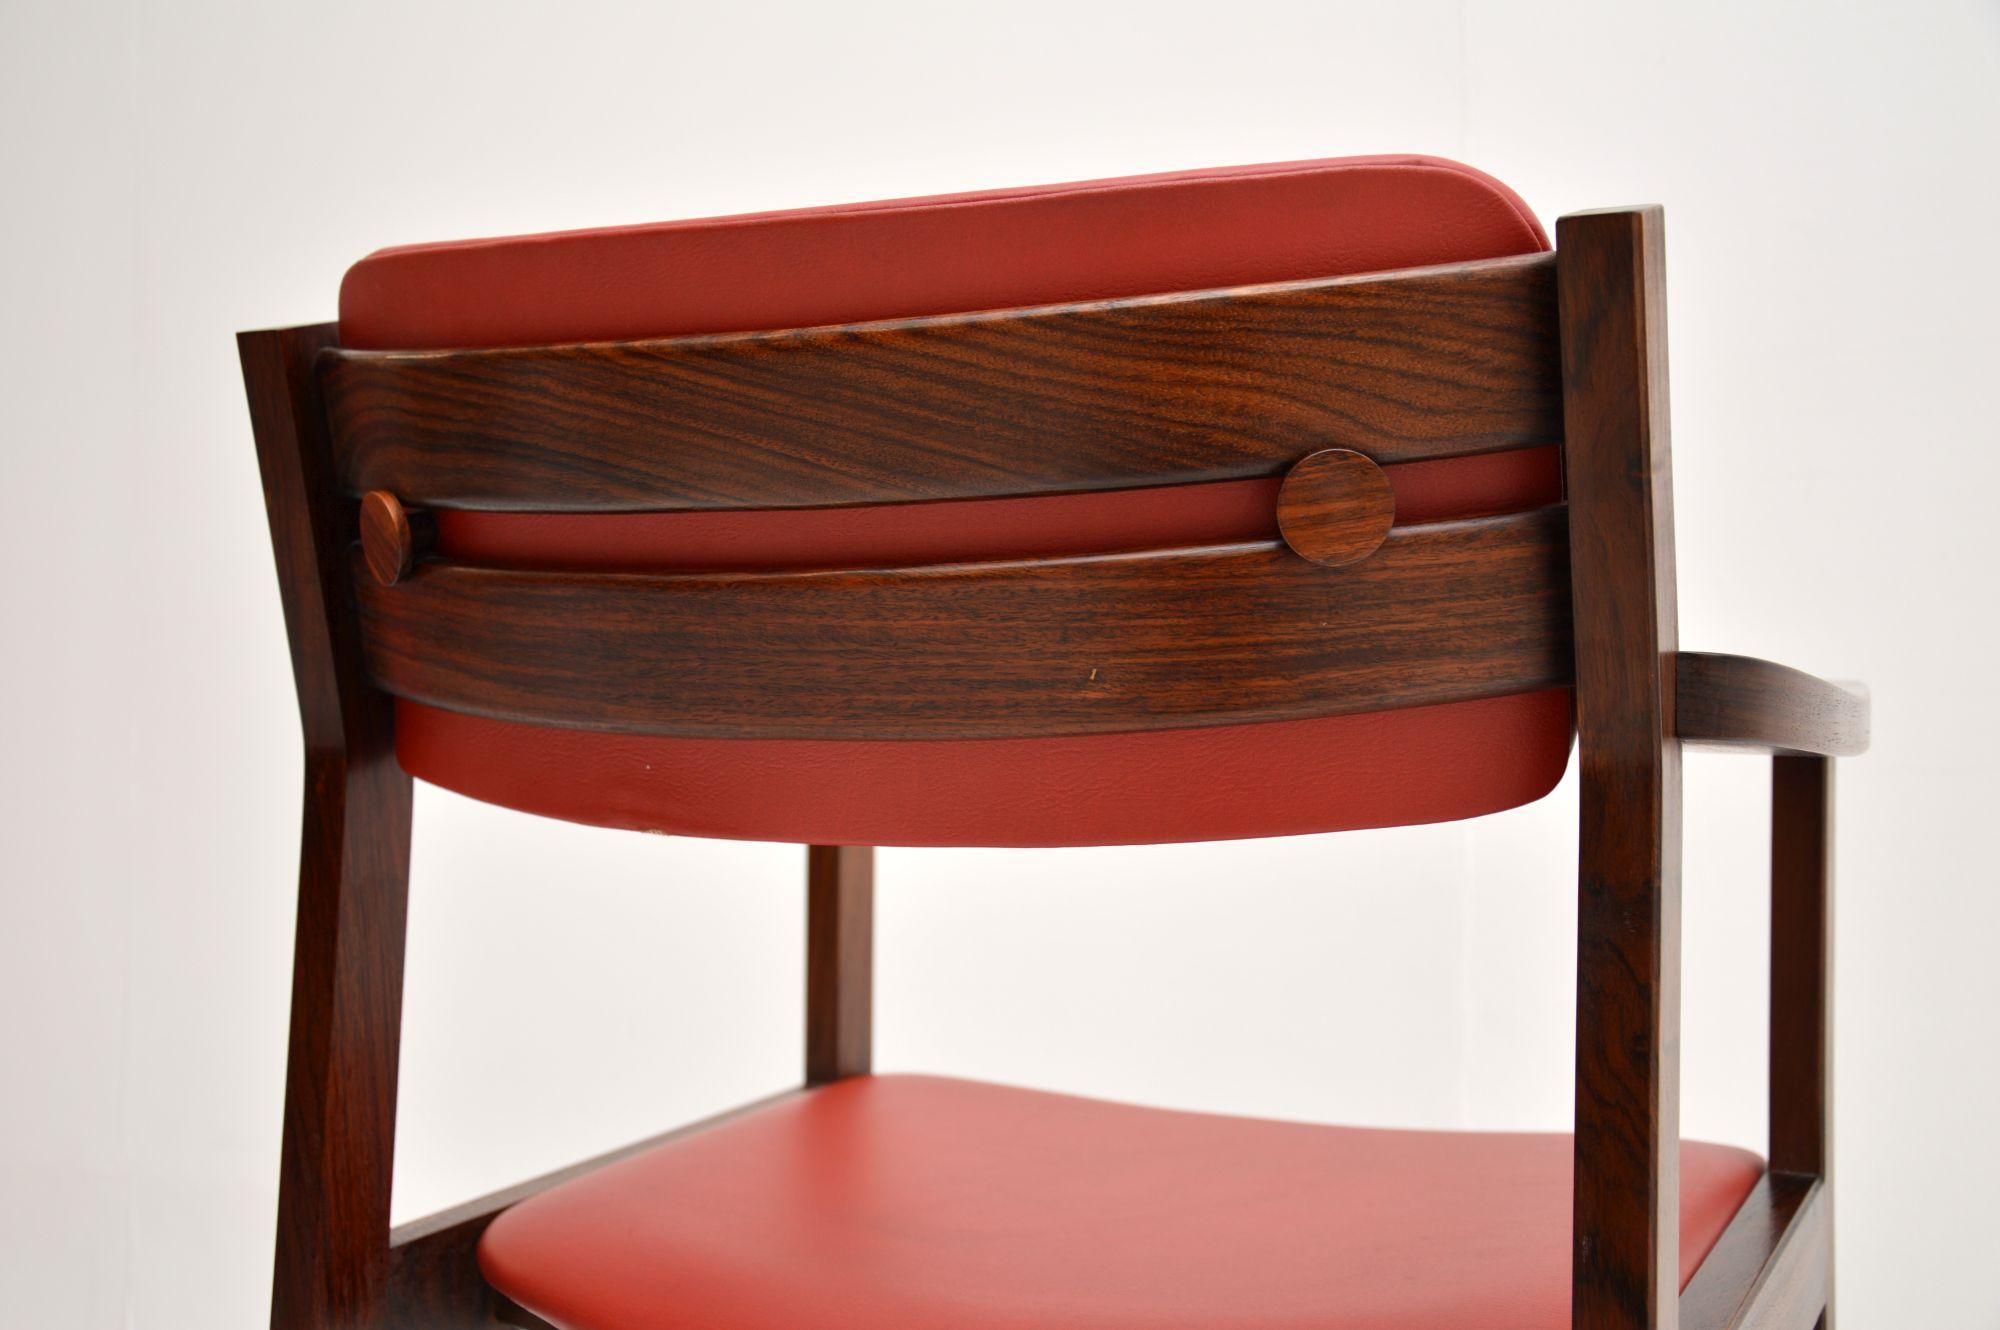 Un fauteuil / chaise de bureau vintage danois très élégant et extrêmement bien fait. Récemment importé du Danemark, il date des années 1960-70.

Ce produit est d'une qualité exceptionnelle, il est magnifiquement conçu et il est également